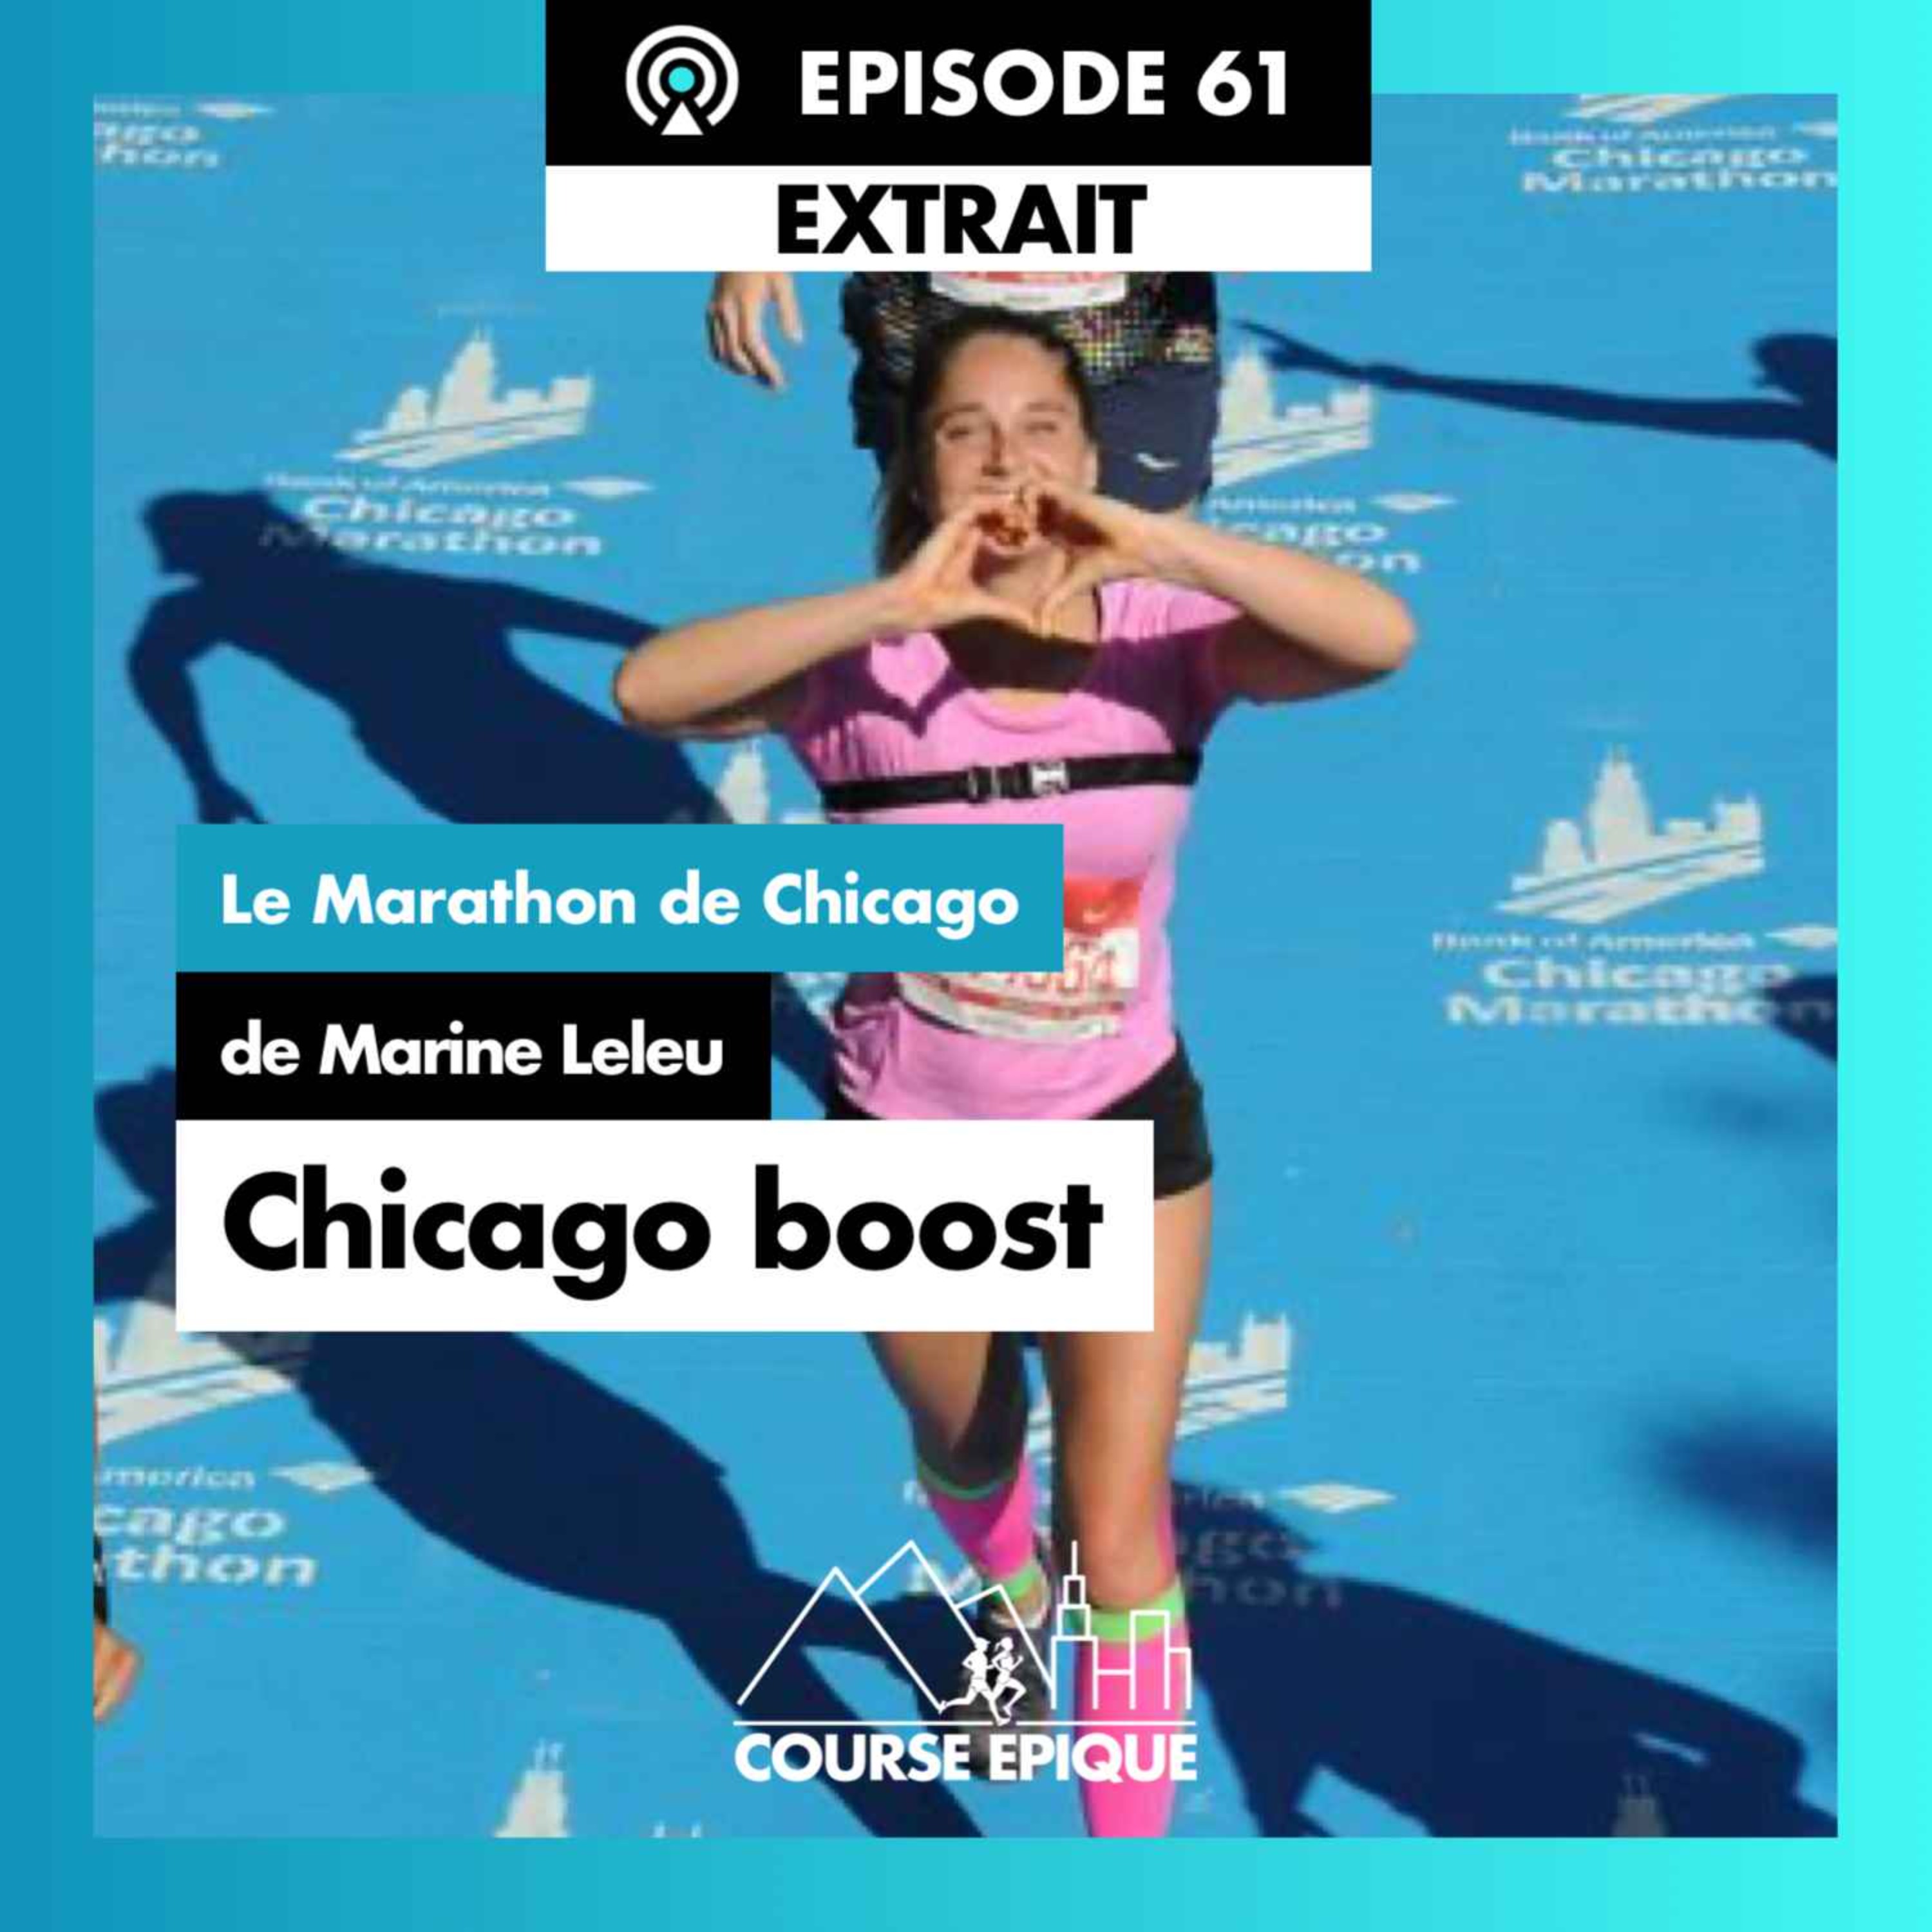 [EXTRAIT] Le Marathon de Chicago de Marine Leleu